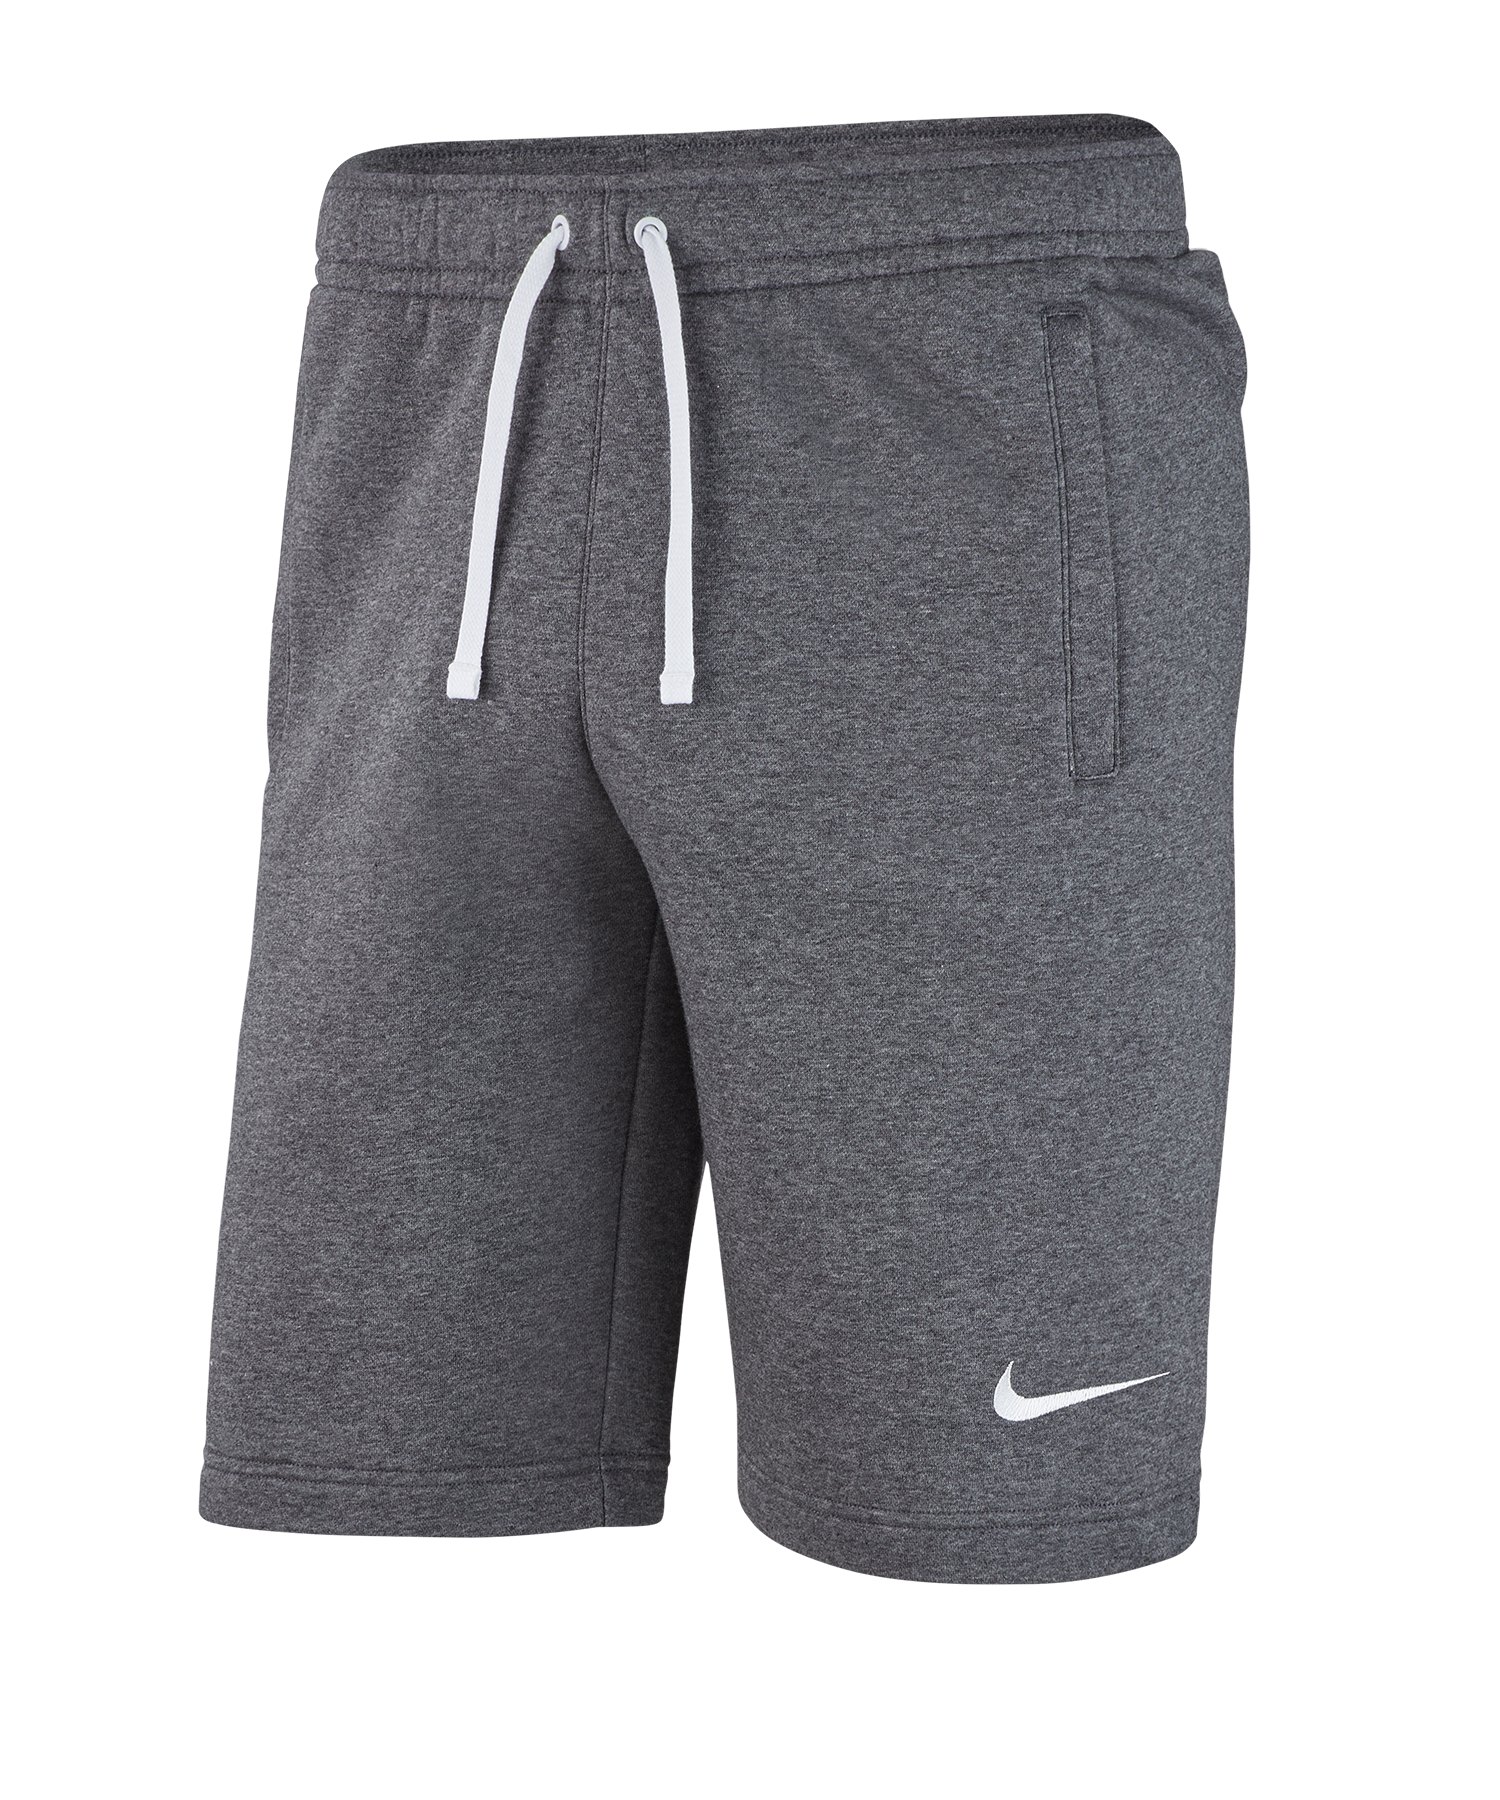 Nike Club 19 Fleece Short Grau F071 - grau